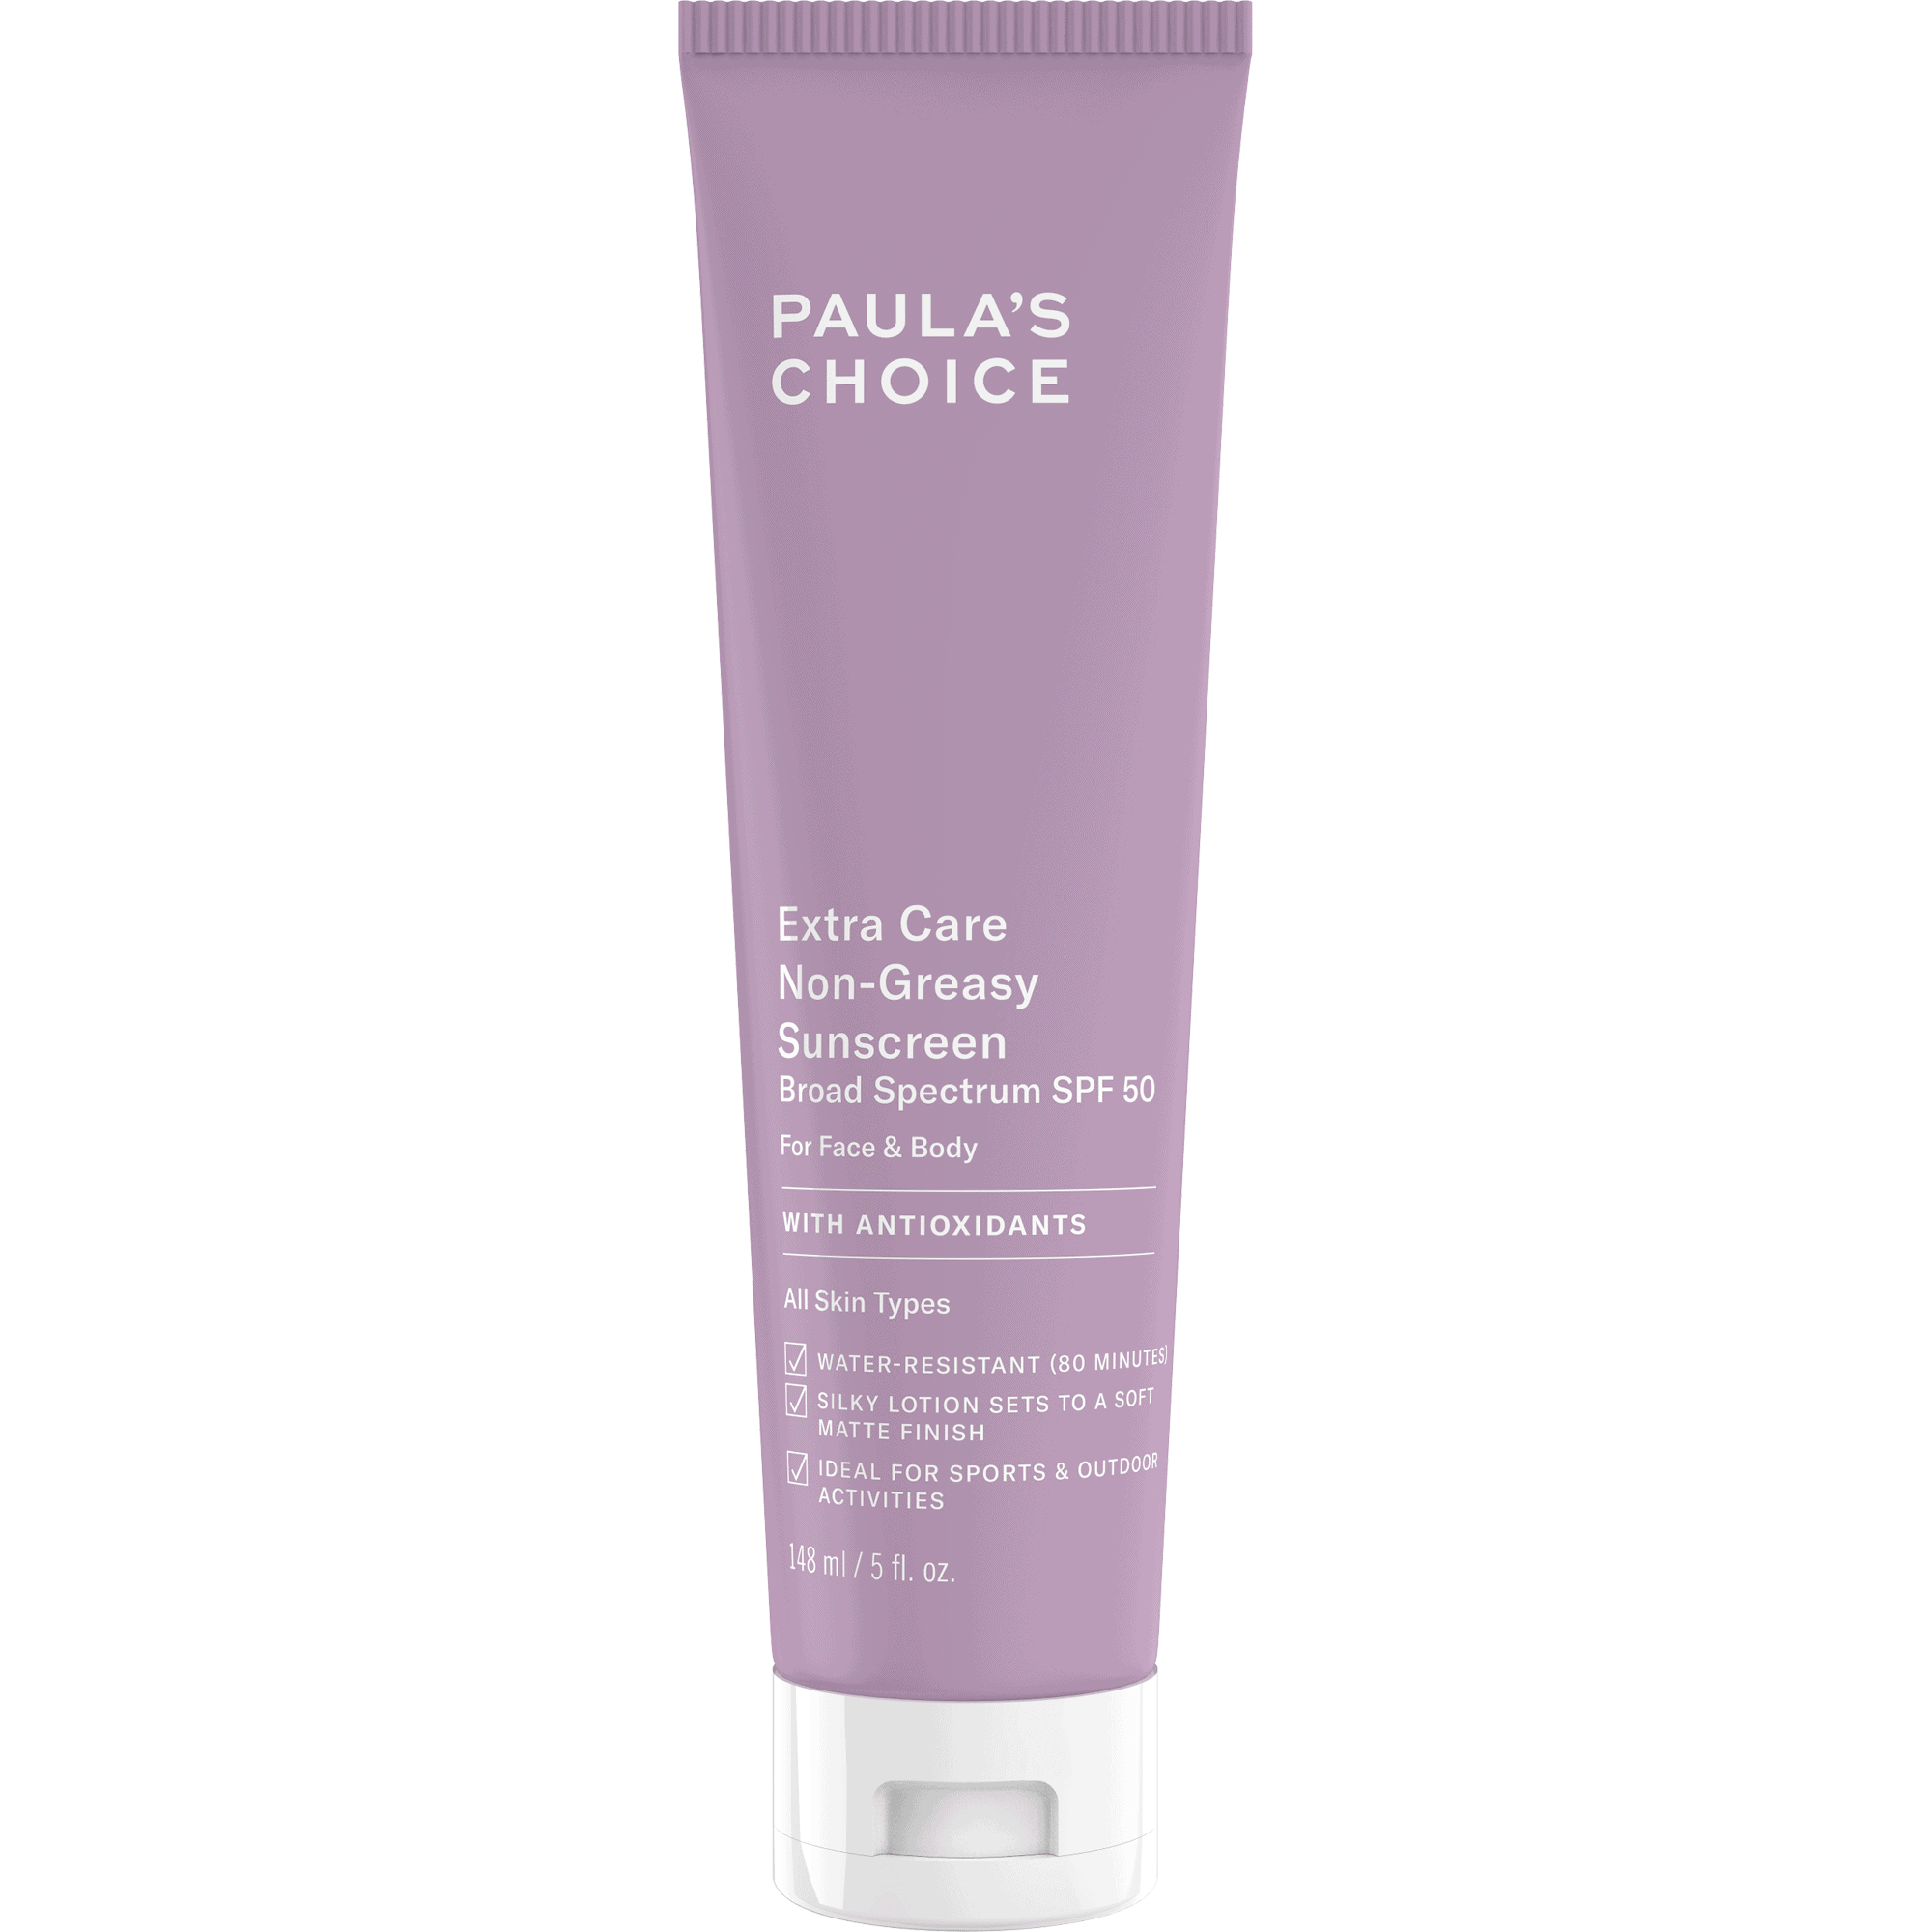 Paula’s Choice Extra Care Non-Greasy Sunscreen SPF 50